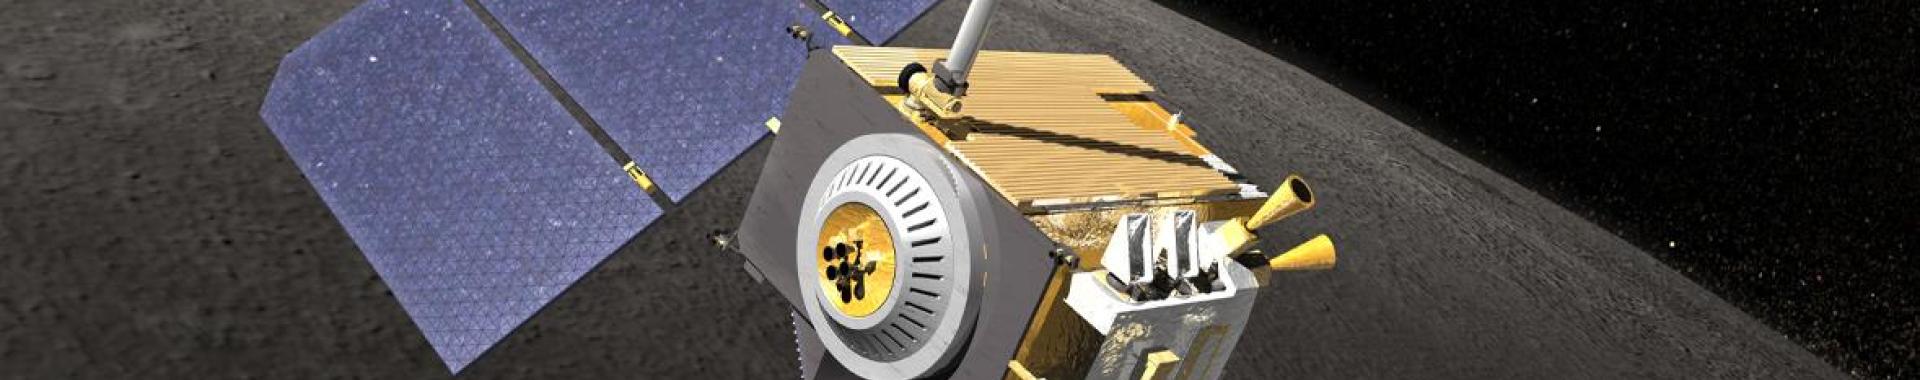 Illustration of Lunar Reconnaissance Orbiter Camera in orbit.